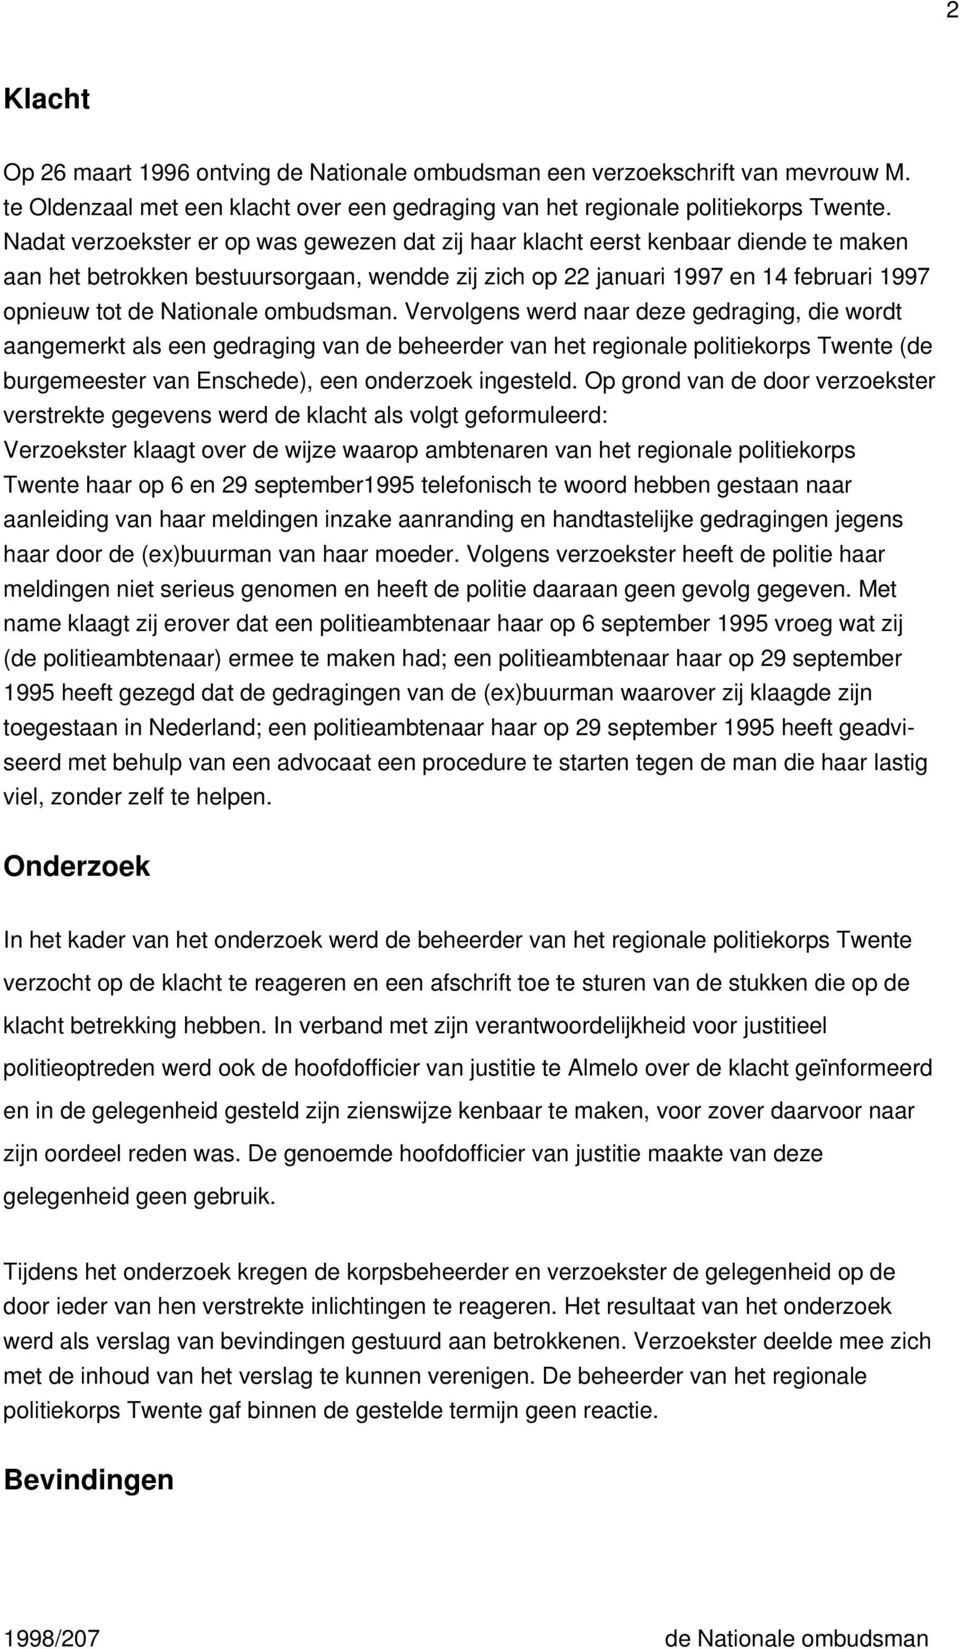 ombudsman. Vervolgens werd naar deze gedraging, die wordt aangemerkt als een gedraging van de beheerder van het regionale politiekorps Twente (de burgemeester van Enschede), een onderzoek ingesteld.